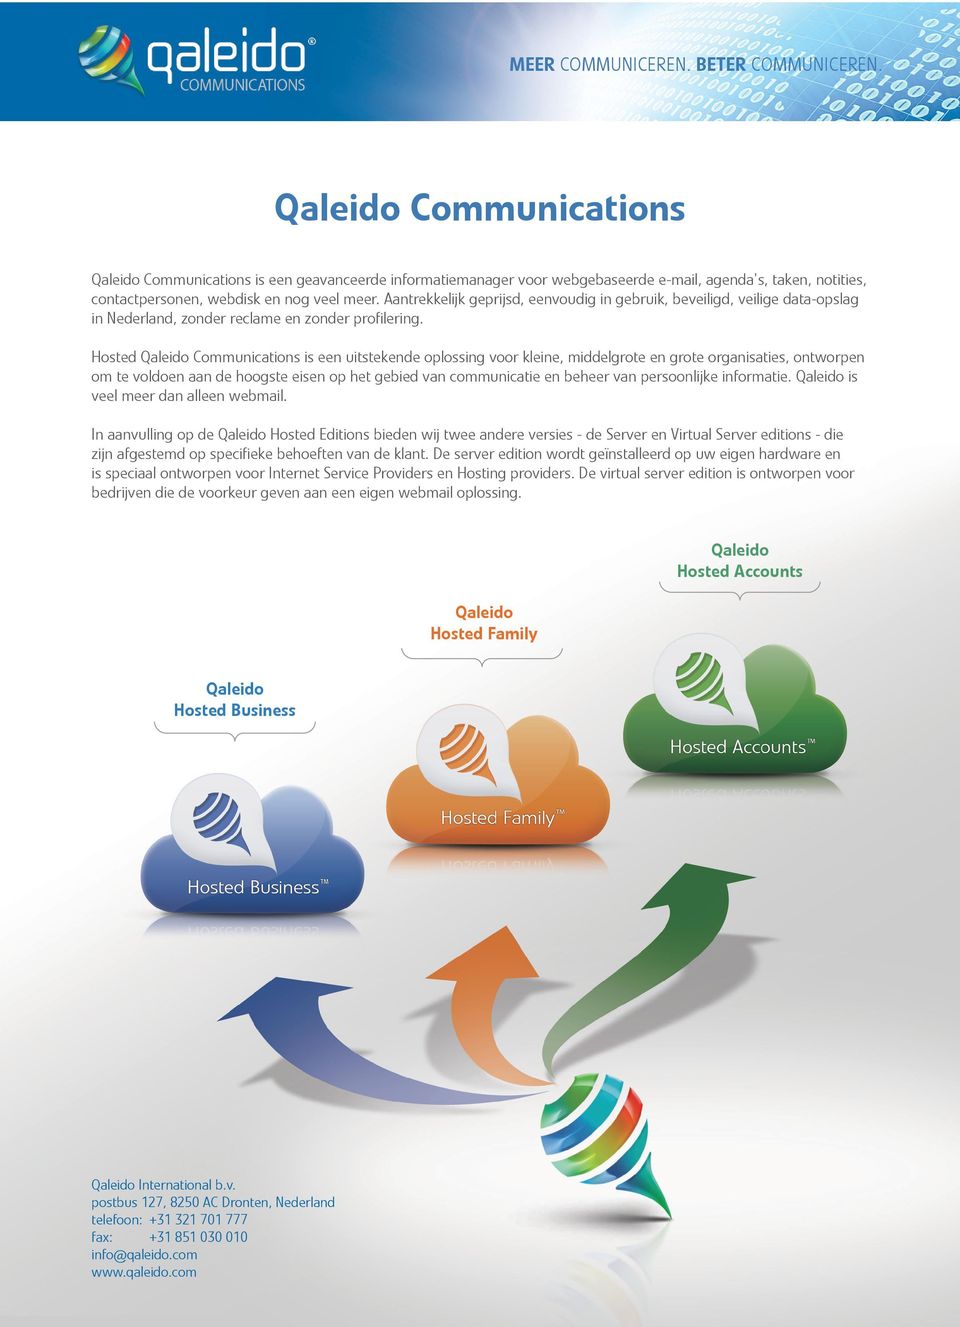 Qaleido Communications is een uitstekende oplossing voor kleine, middelgrote en grote organisaties, ontworpen om te voldoen aan de hoogste eisen op het gebied van communicatie en beheer van